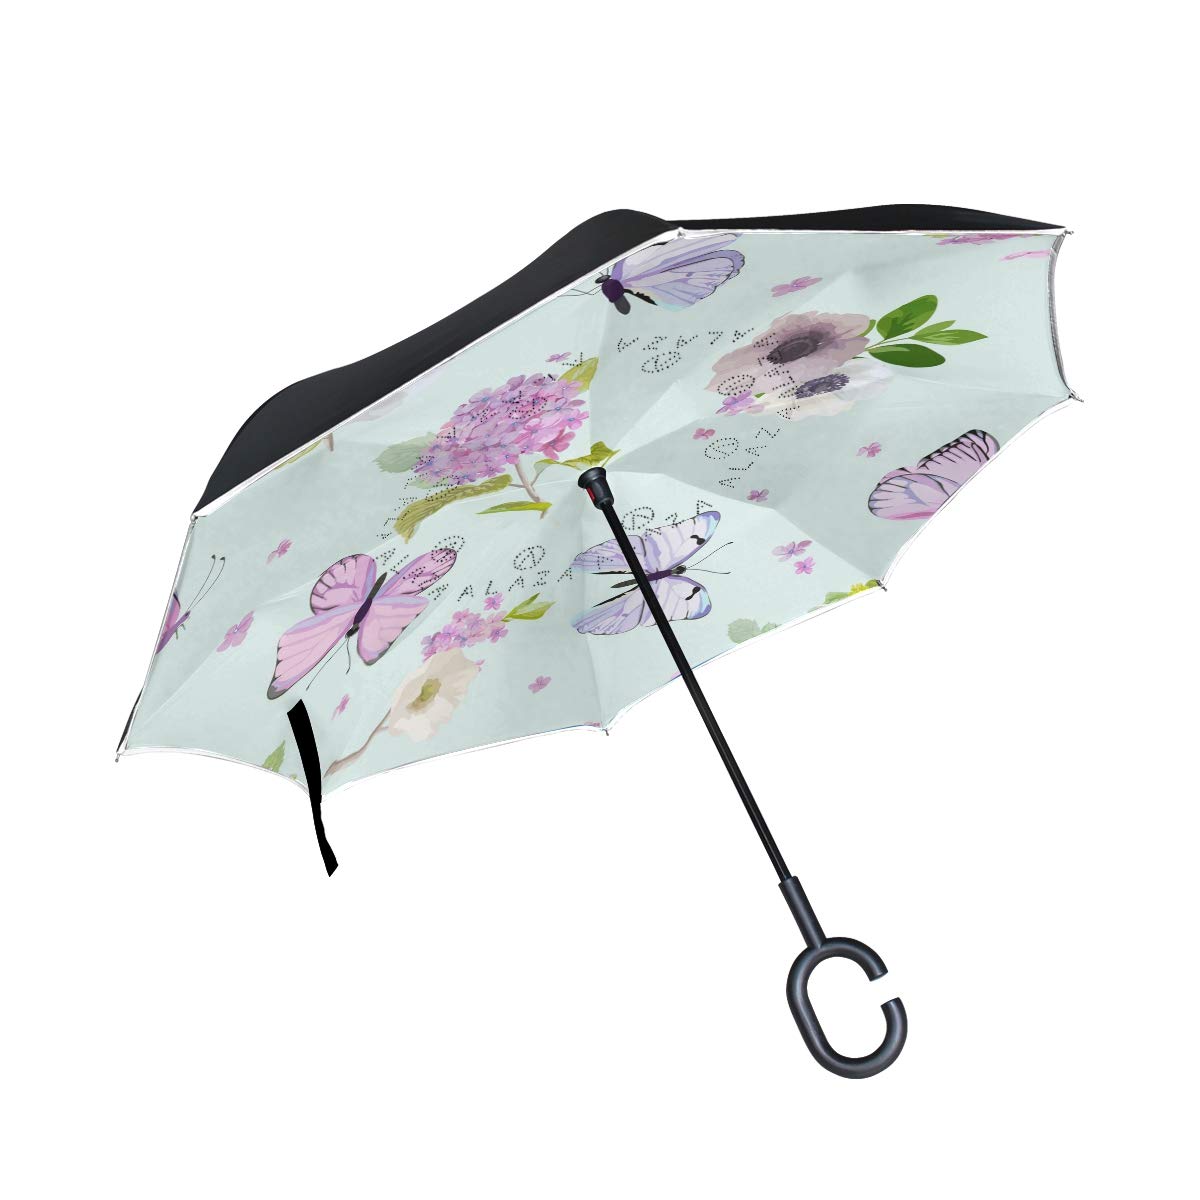 ISAOA Gro?er umgekehrter faltbarer Regenschirm, doppellagig, winddicht, UV-Schutz, Regenschirm, f¨¹r den Au?enbereich, C-f?rmiger Griff, selbststehend, Blumen und fliegende Schmetterlinge.